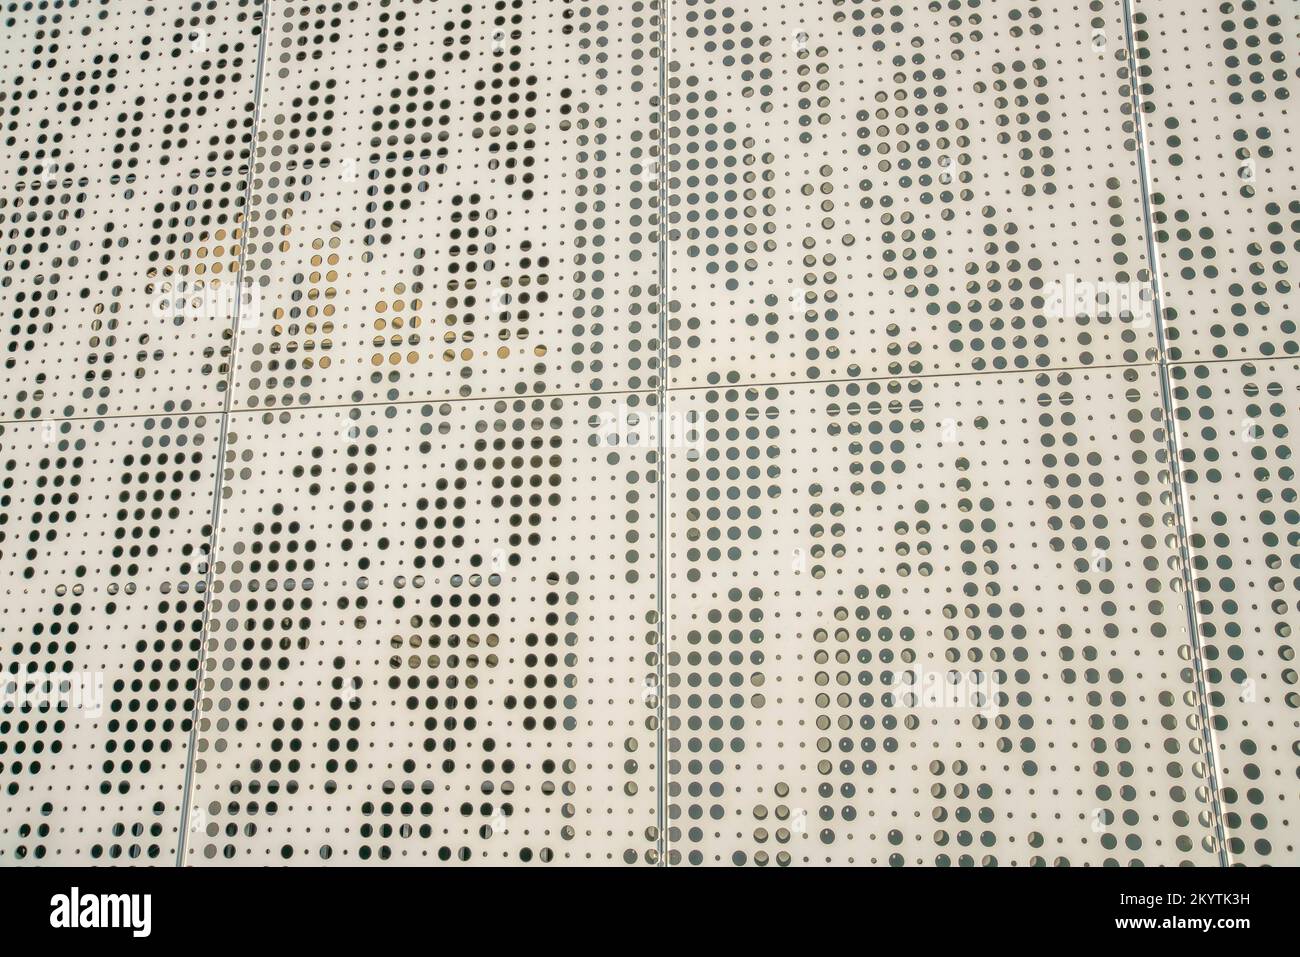 Parete in lamiera beige con fori in vista ravvicinata. Esterno della parete dell'edificio con lamiera metallica con fori di dimensioni irregolari e verniciata di beige. Foto Stock